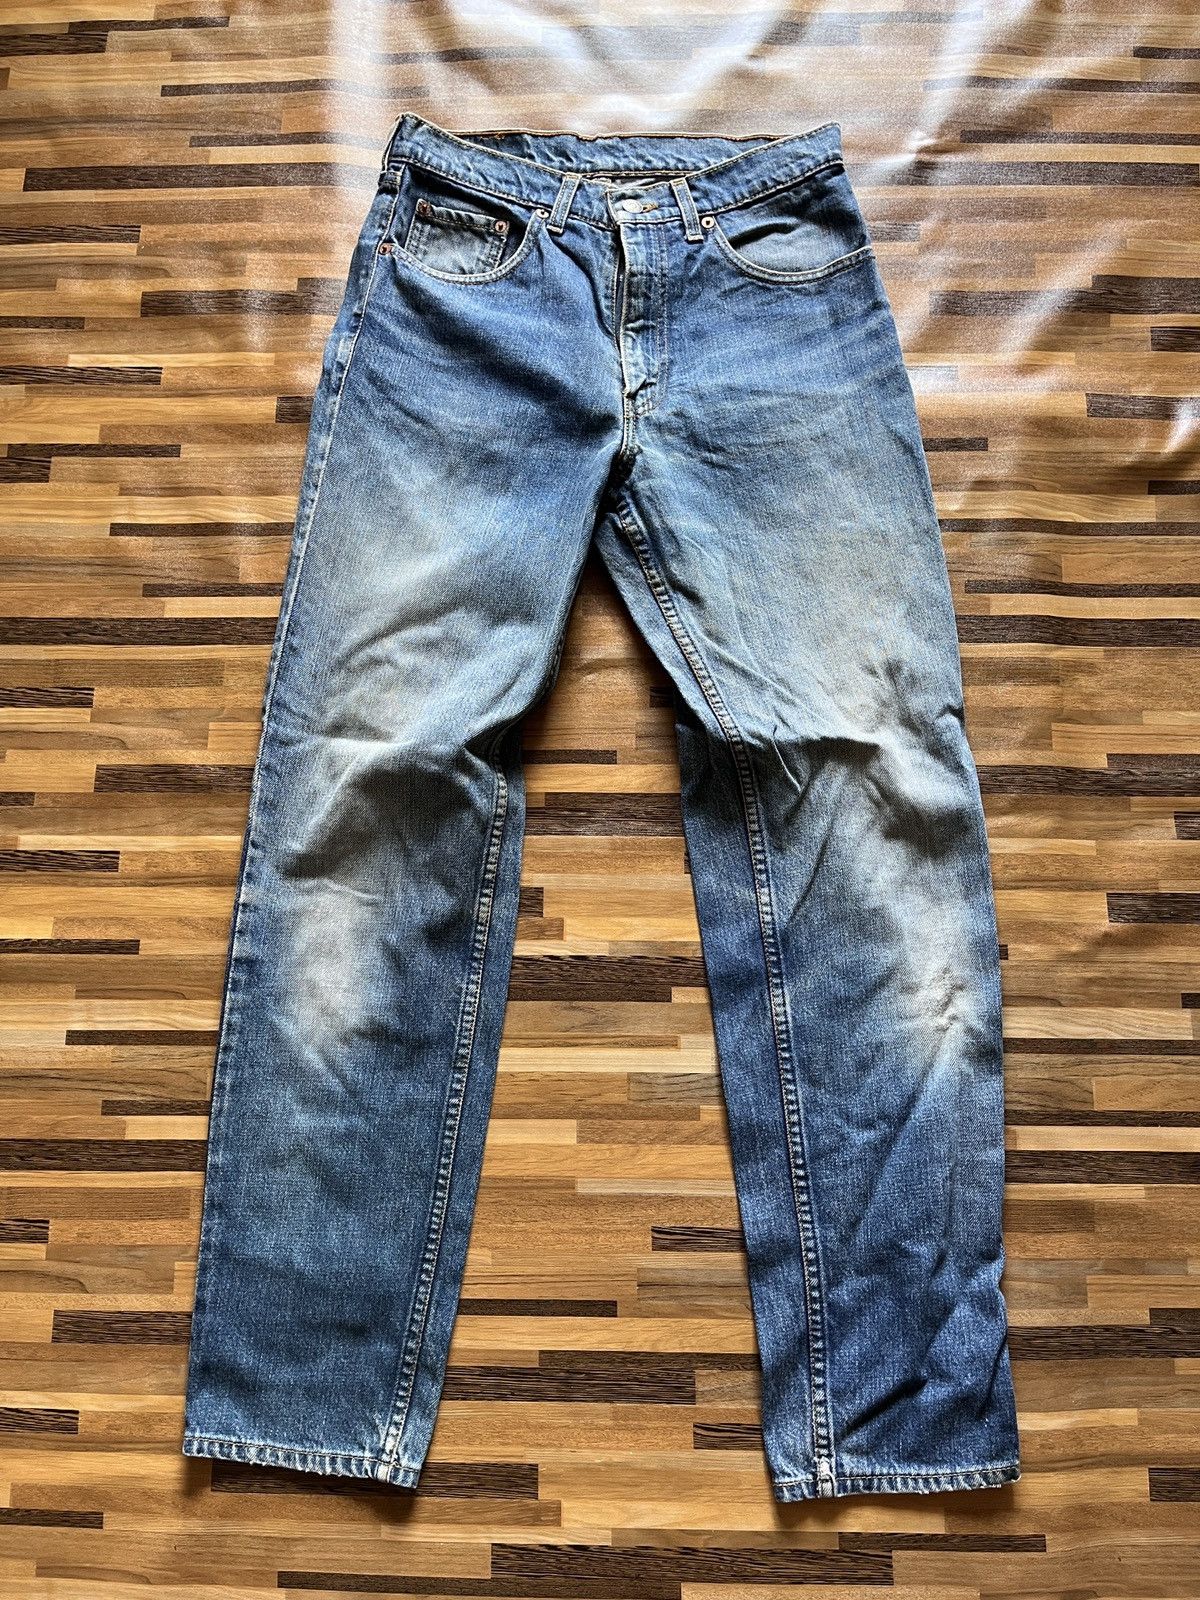 Vintage 1980s Levi's 603 Denim Jeans Straight Cut - 14